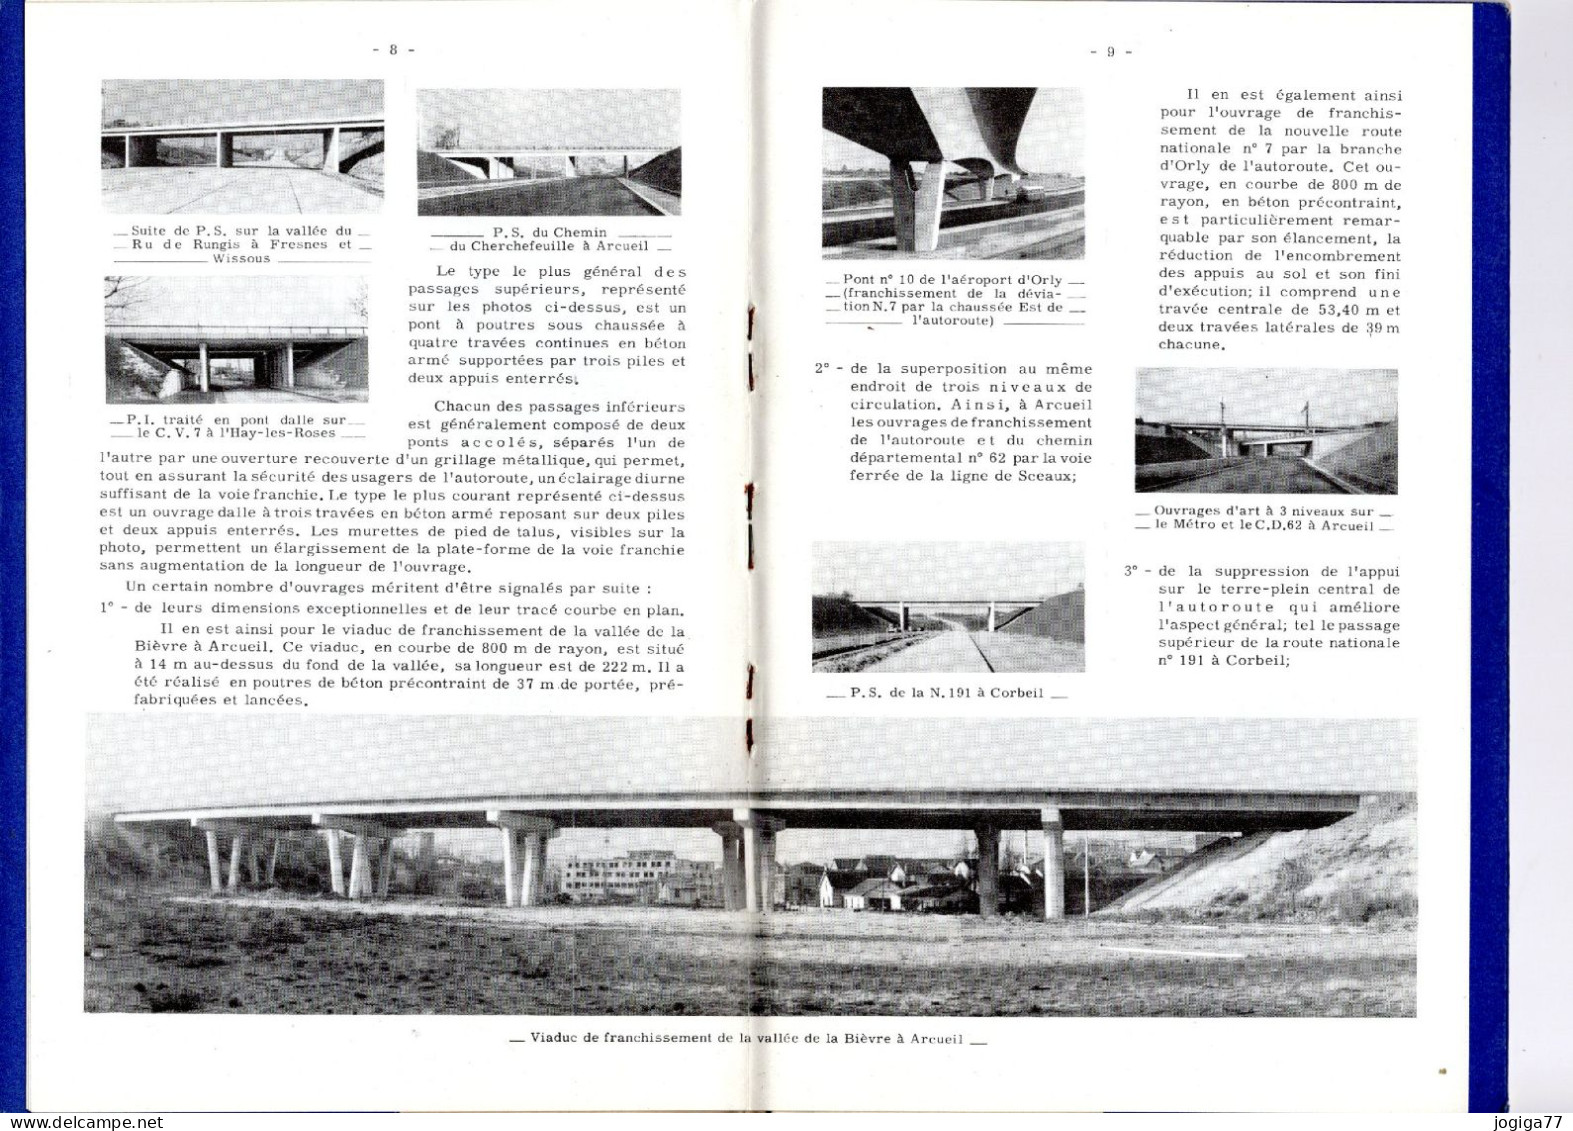 L'autoroute Du Sud De Paris - Paris-Corbeil - Livret Ponts Et Chaussées - 1960 - Public Works